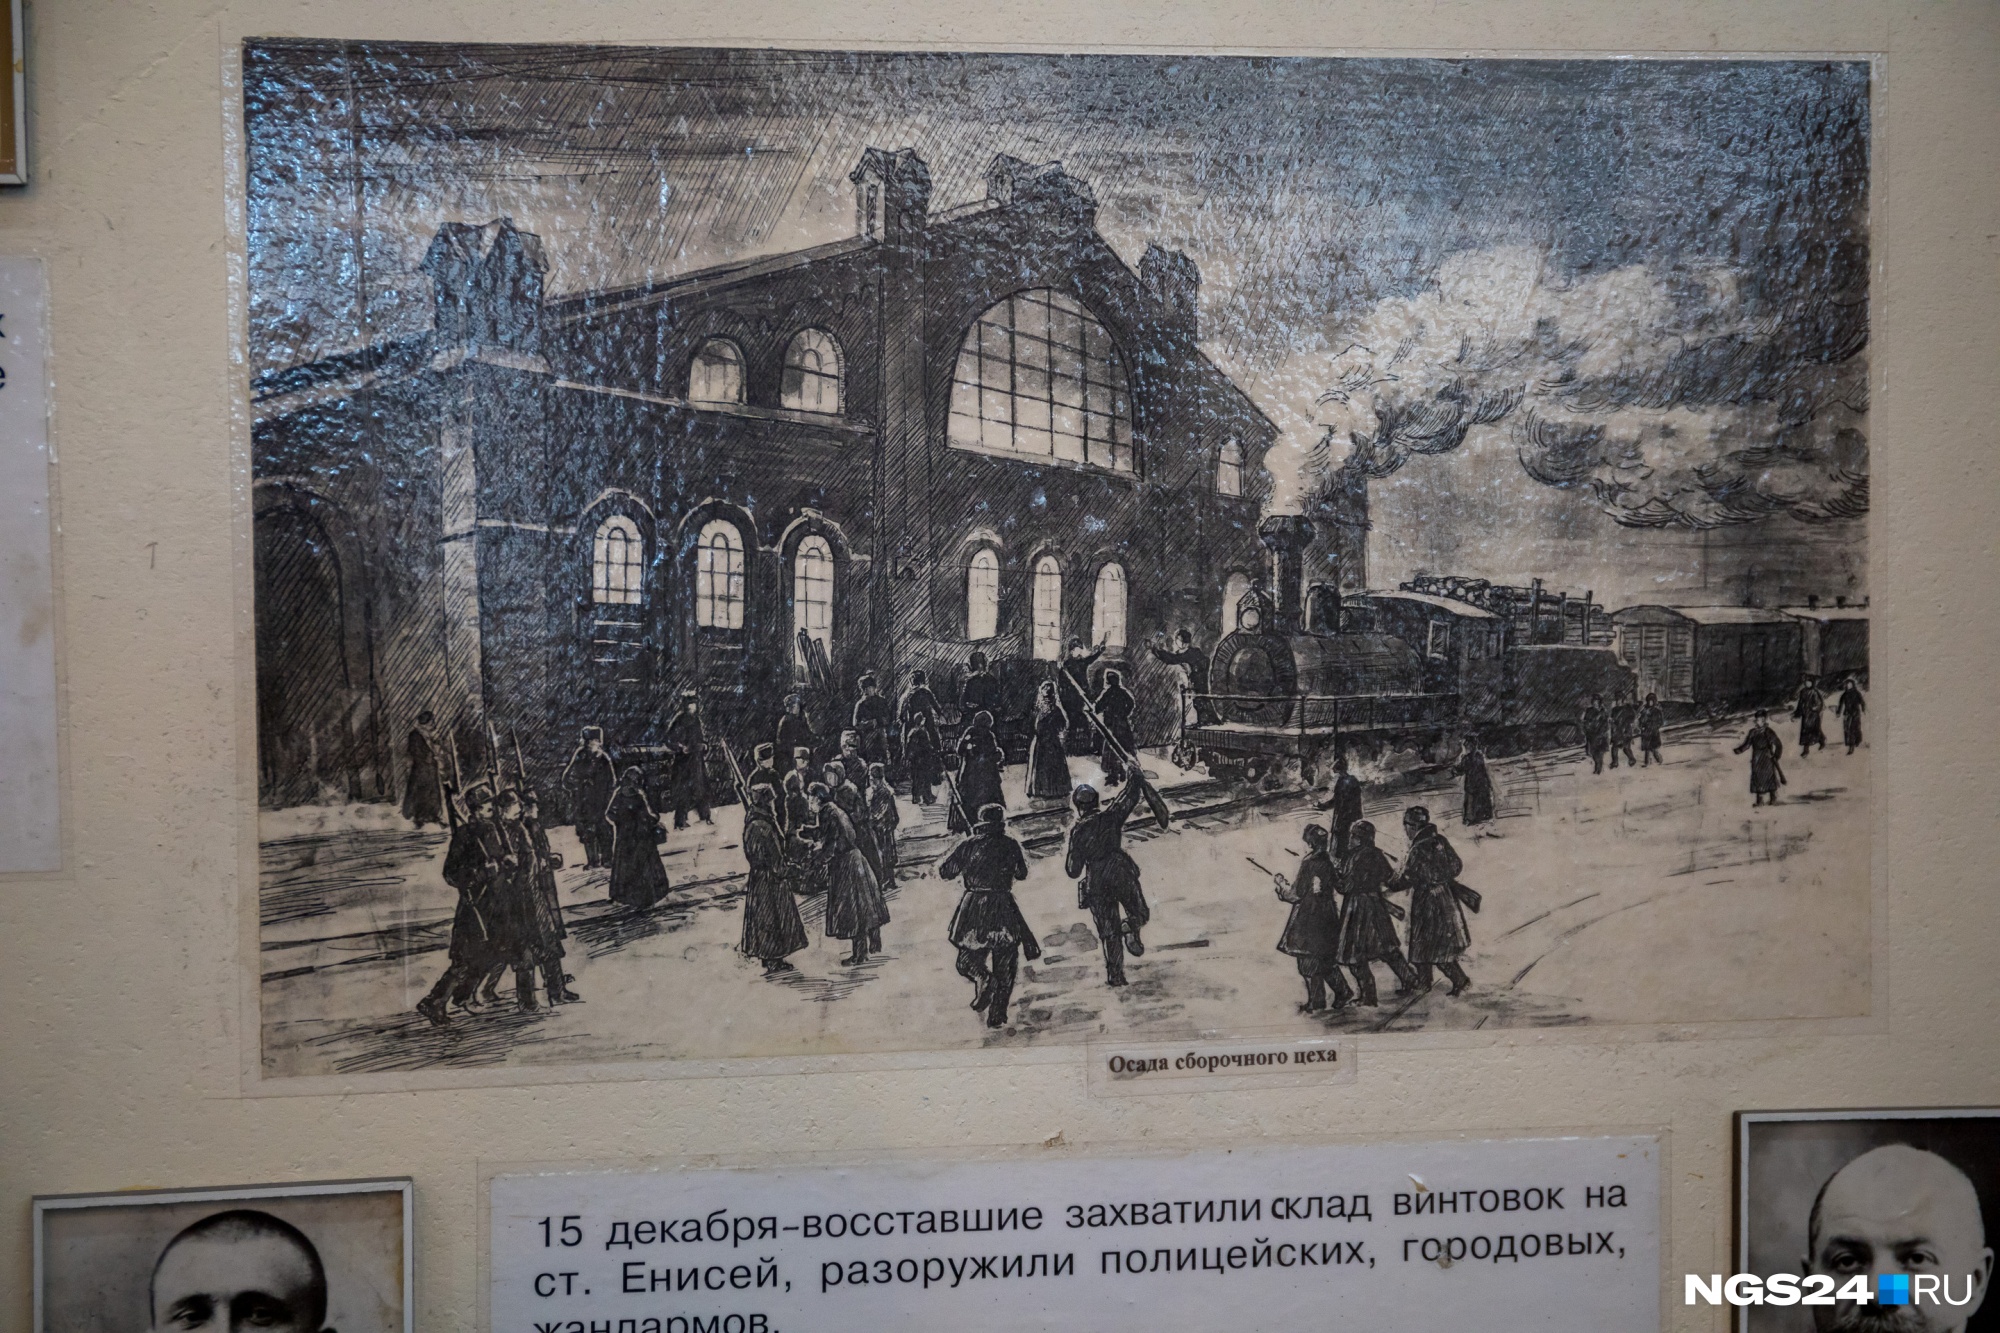 Фотографий осады завода 1905 года нет, но в музее есть вот такой рисунок на эту тему